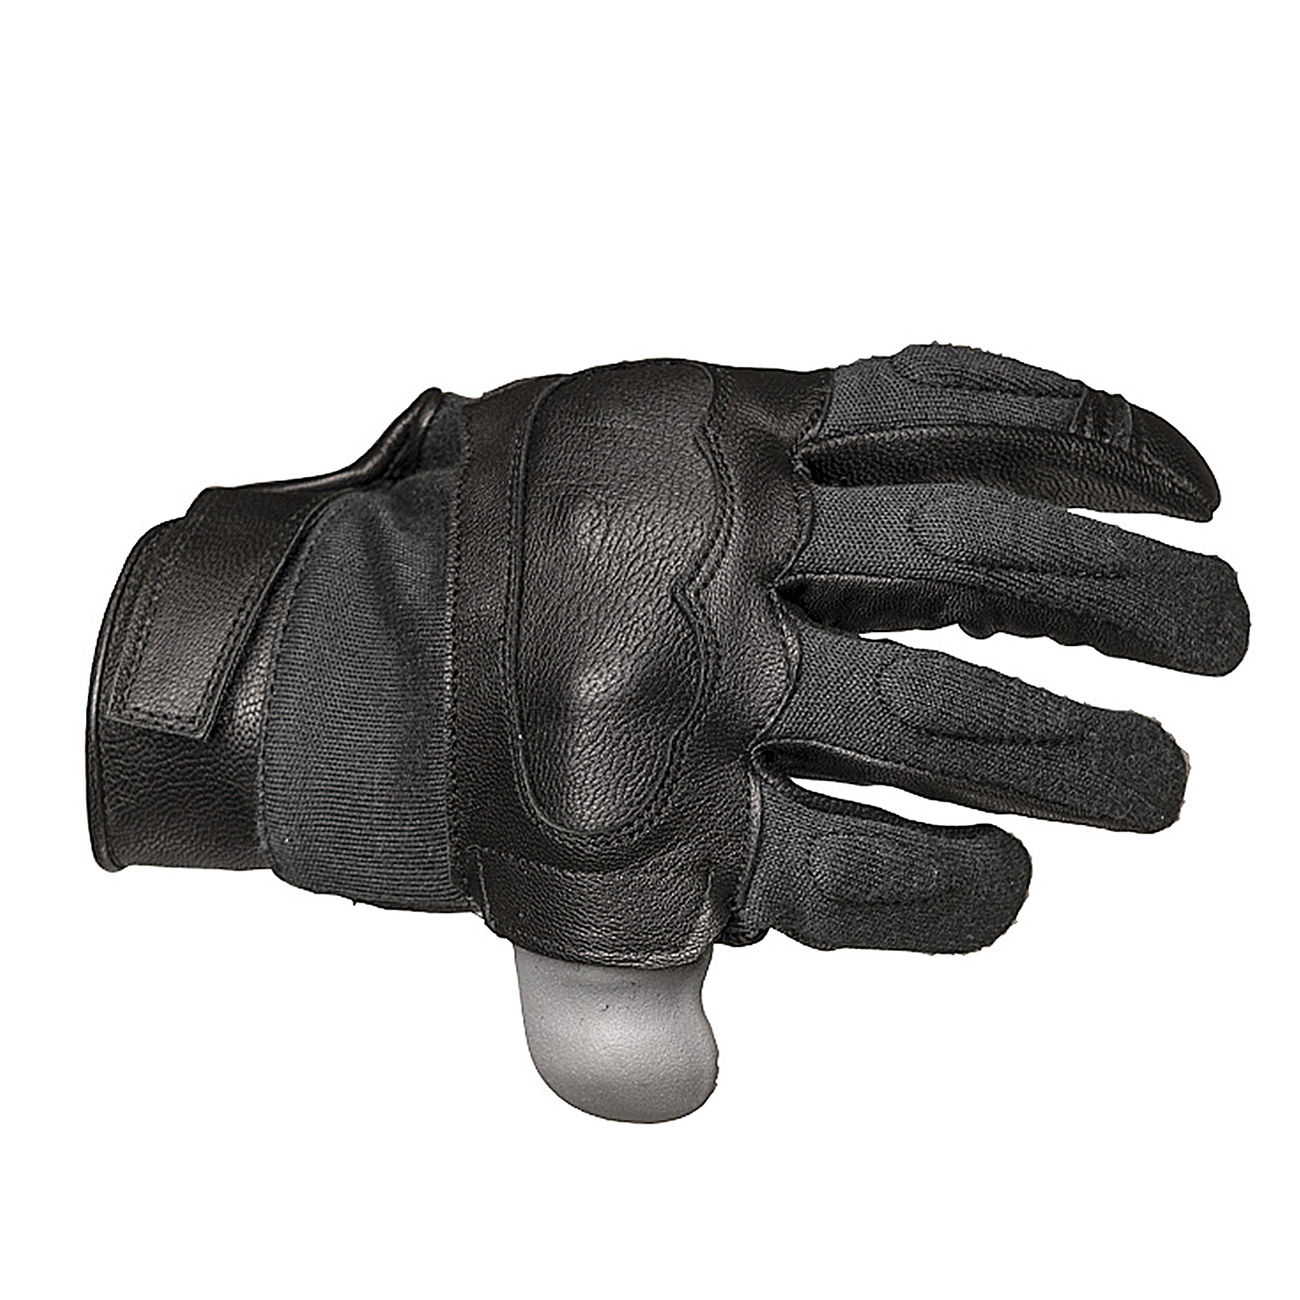 Tactical Gloves Leder Black schwarz Einsatz Handschuhe